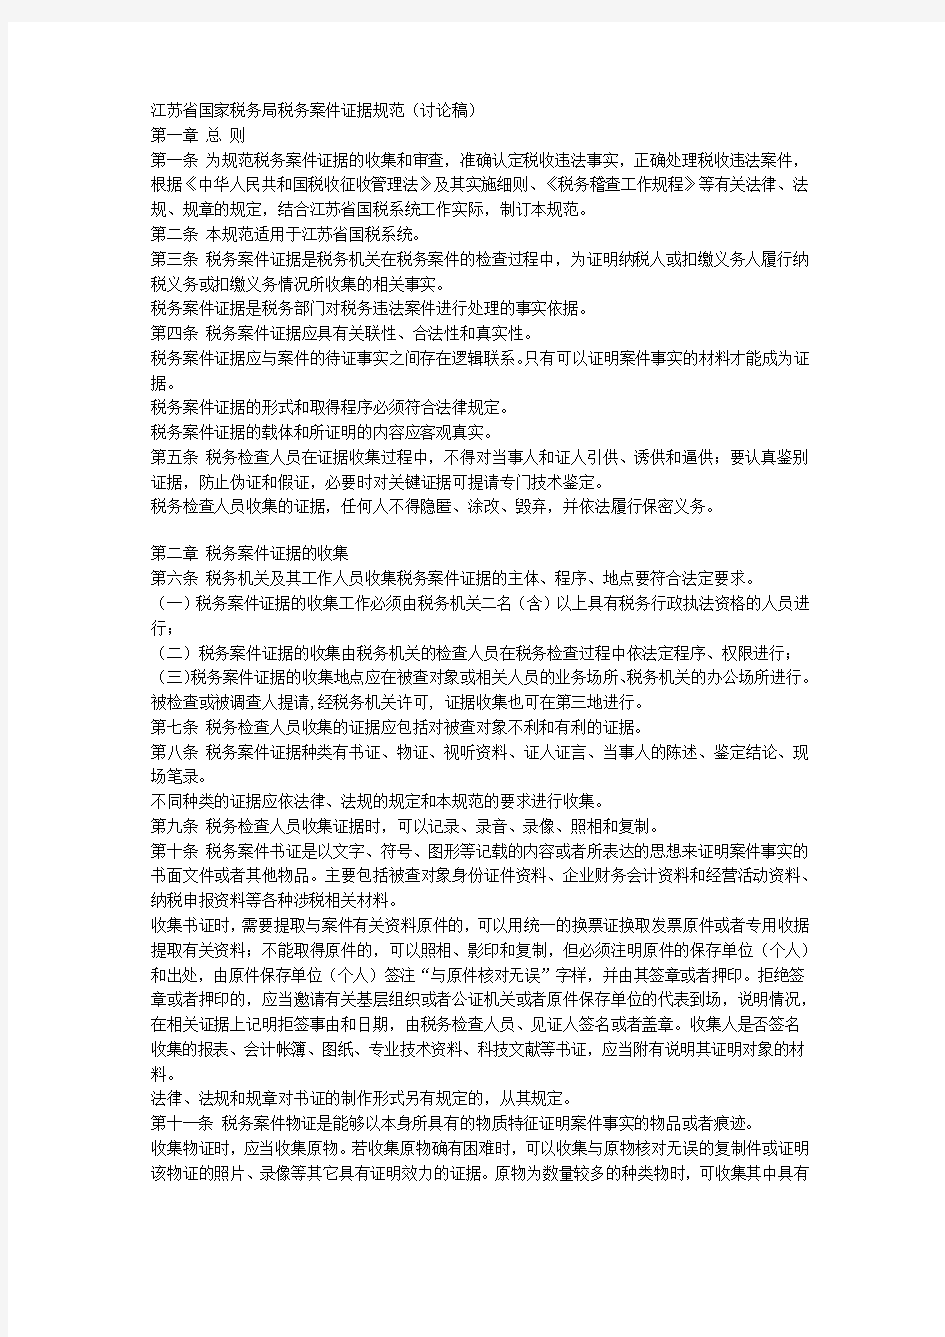 江苏省国家税务局税务案件证据规范